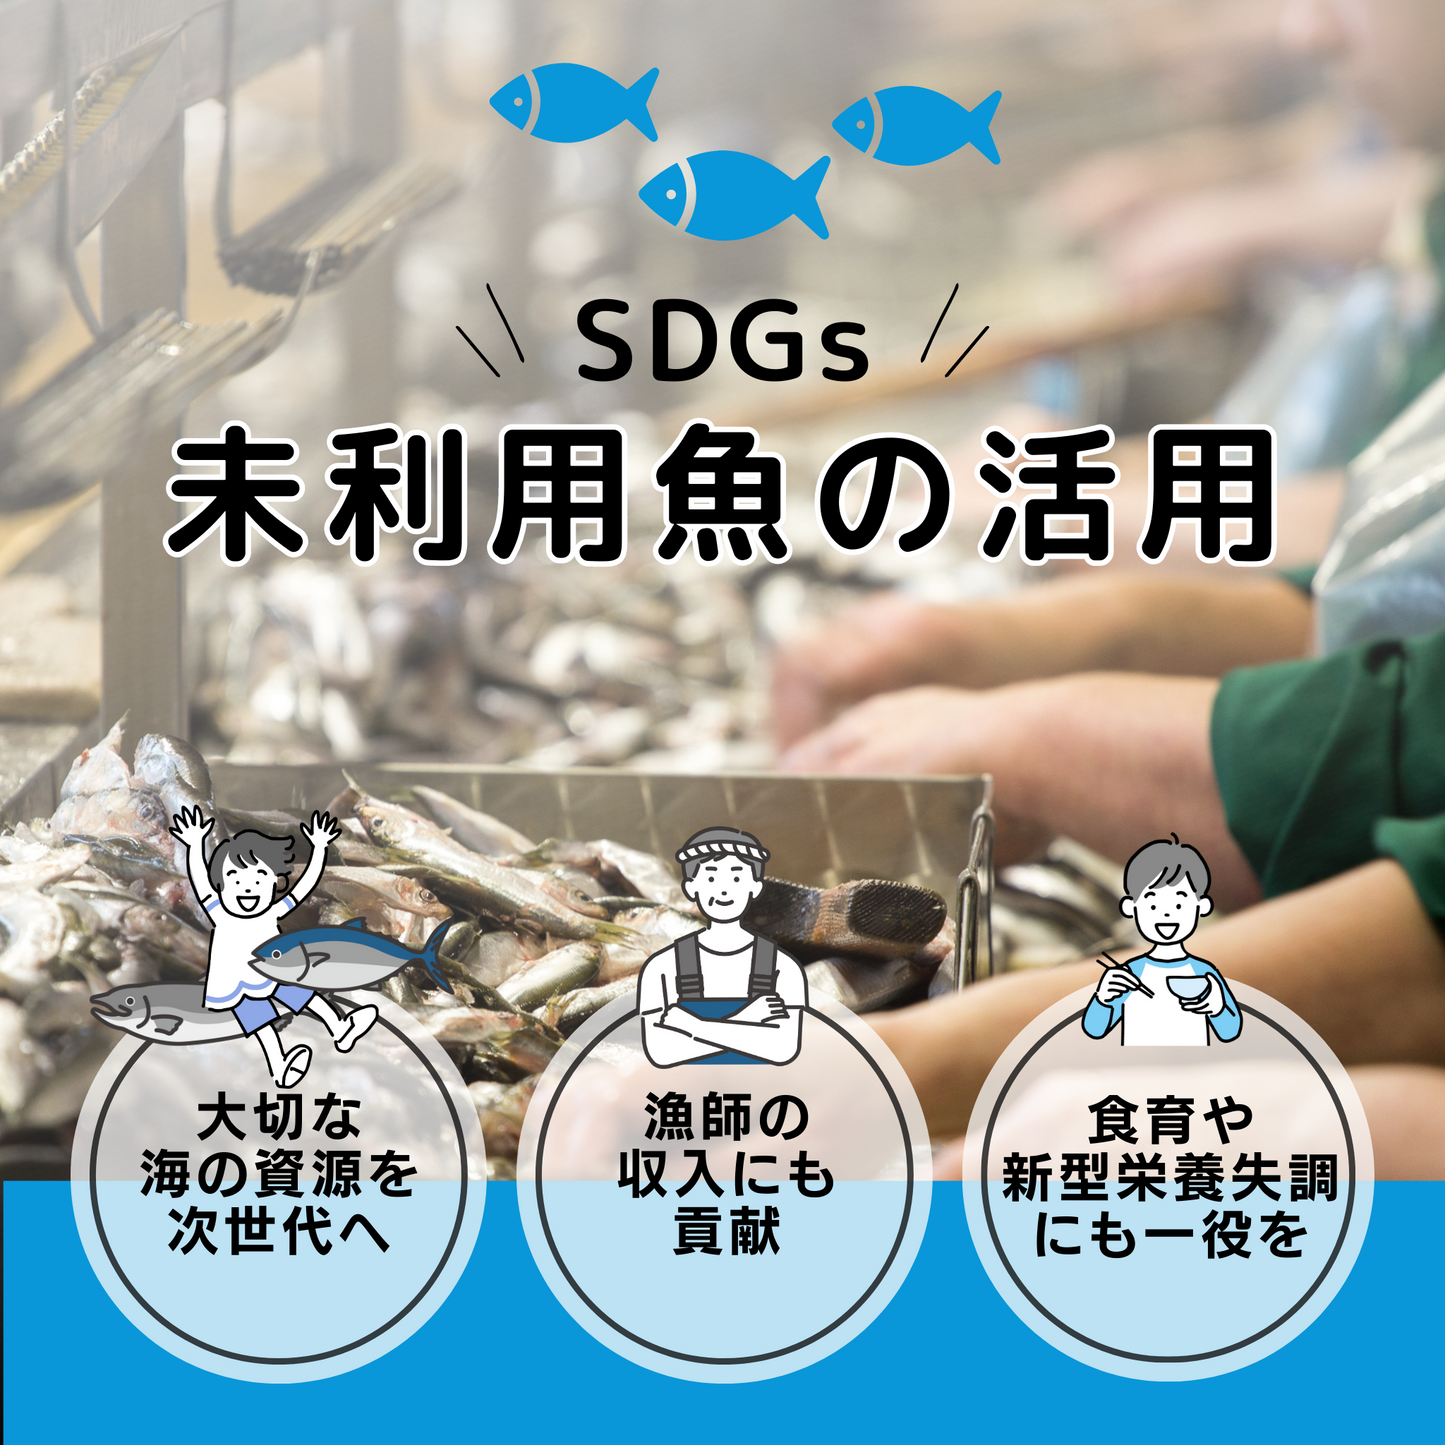 未利用魚の活用を通し、大切な海の資源を次世代に繋ぎ・漁師の収入源の確保などSDGsにも取り組んでいます。